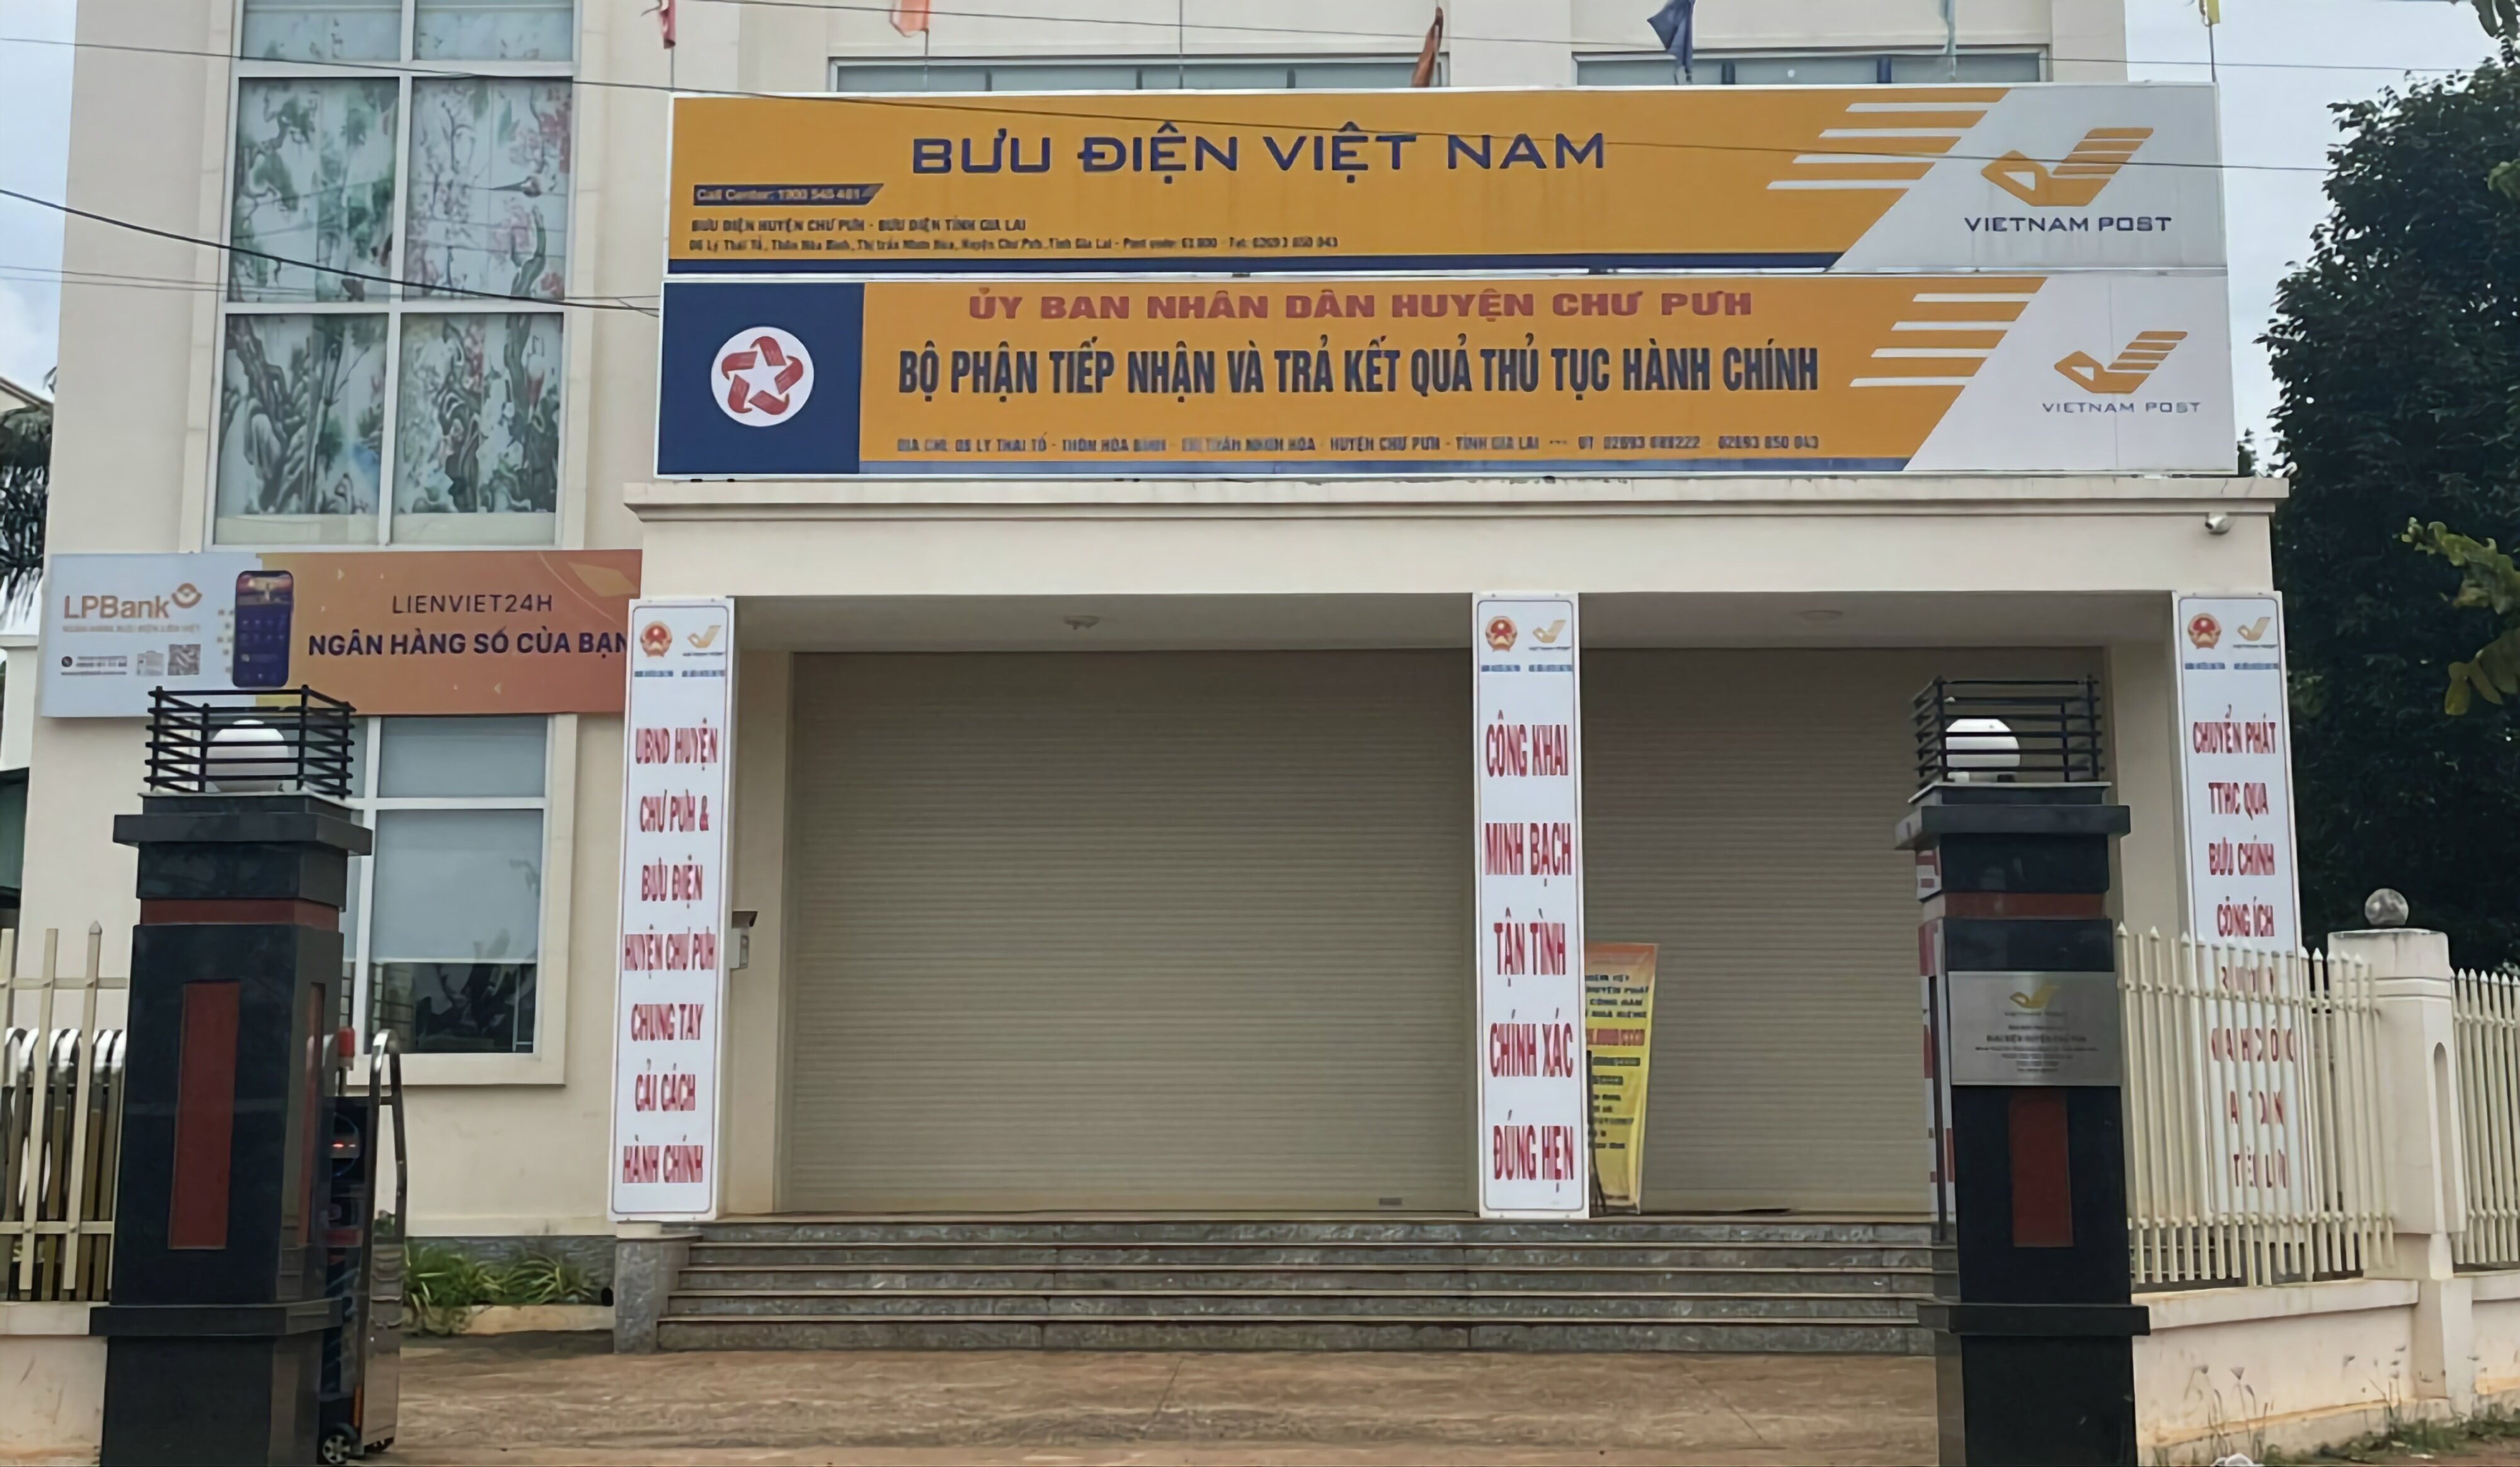 Bưu điện huyện Chư Pưh, nơi bà Nguyễn Thị Hồng Nga làm việc trước khi bị bắt.